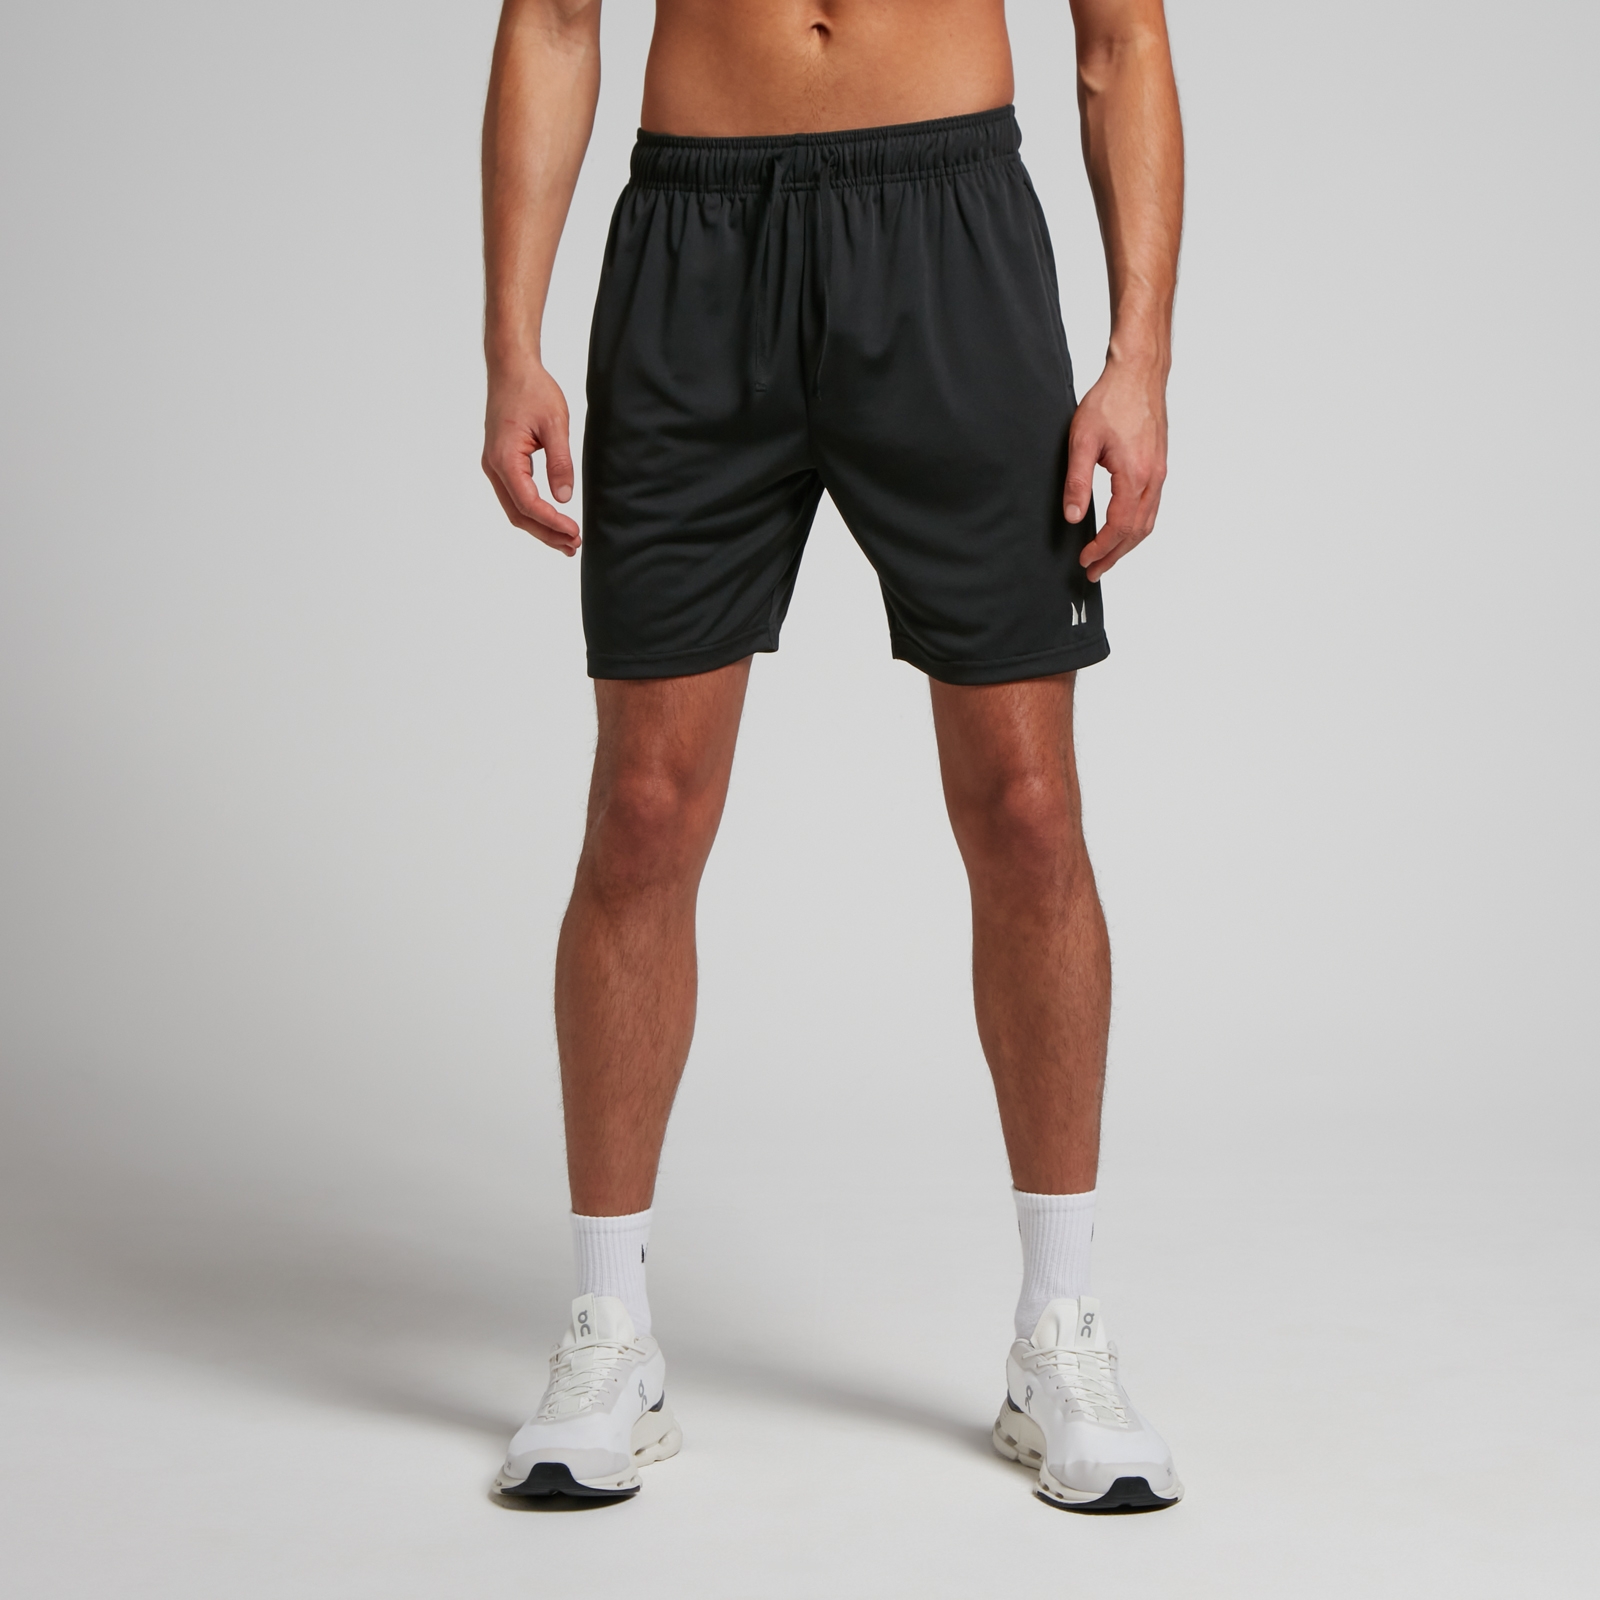 MP muške lagane kratke hlače za trening – crne - XS